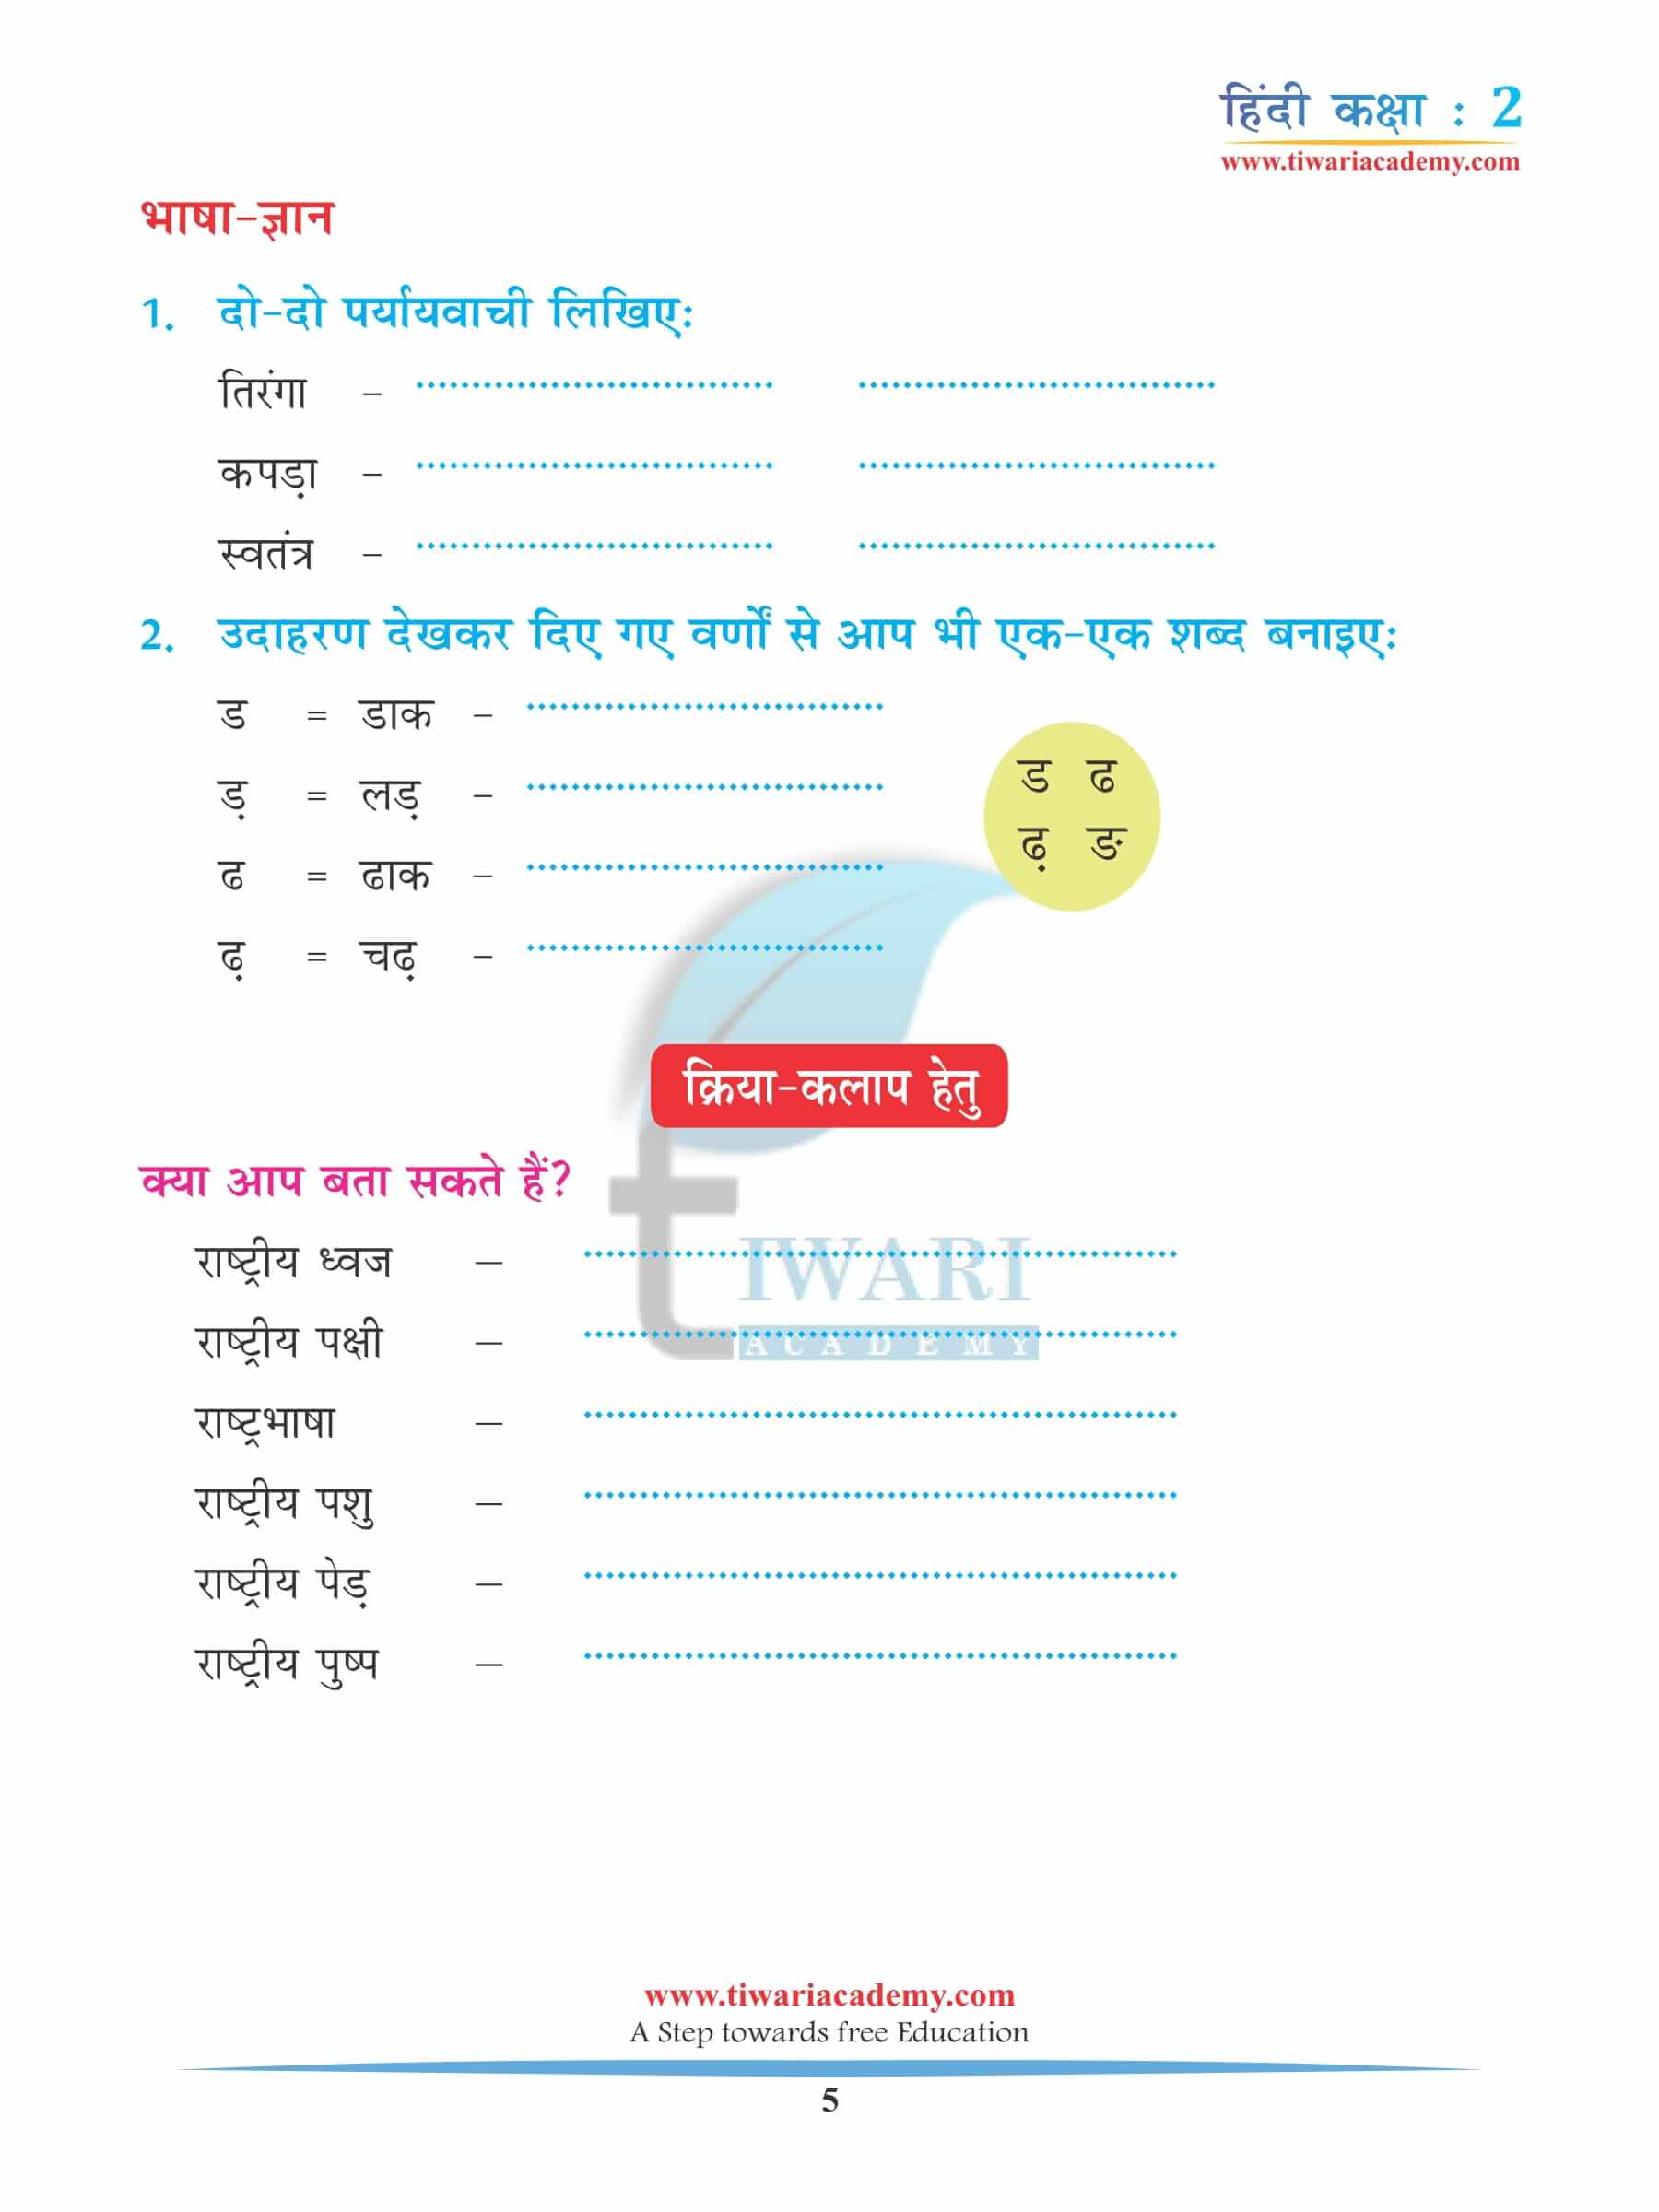 कक्षा 2 हिंदी अध्याय 11 अभ्यास के लिए किताब